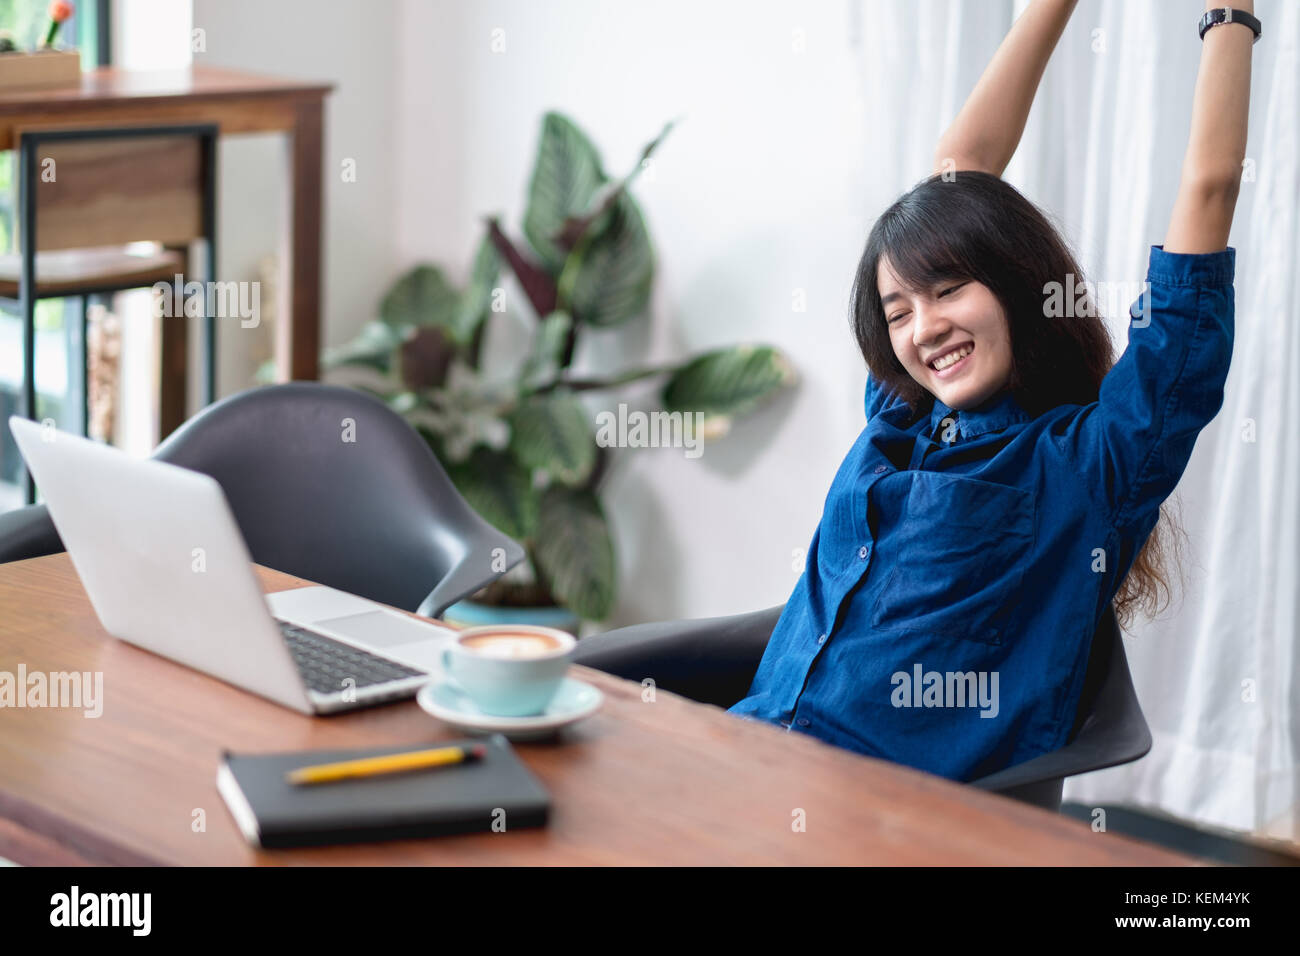 Asien Frau entspannen Sie nach der Arbeit, Frau den Arm anheben, die sich vor dem Laptop und Kaffee Tasse auf Holz Tisch im Cafe Restaurant, Lifestyle, Stockfoto